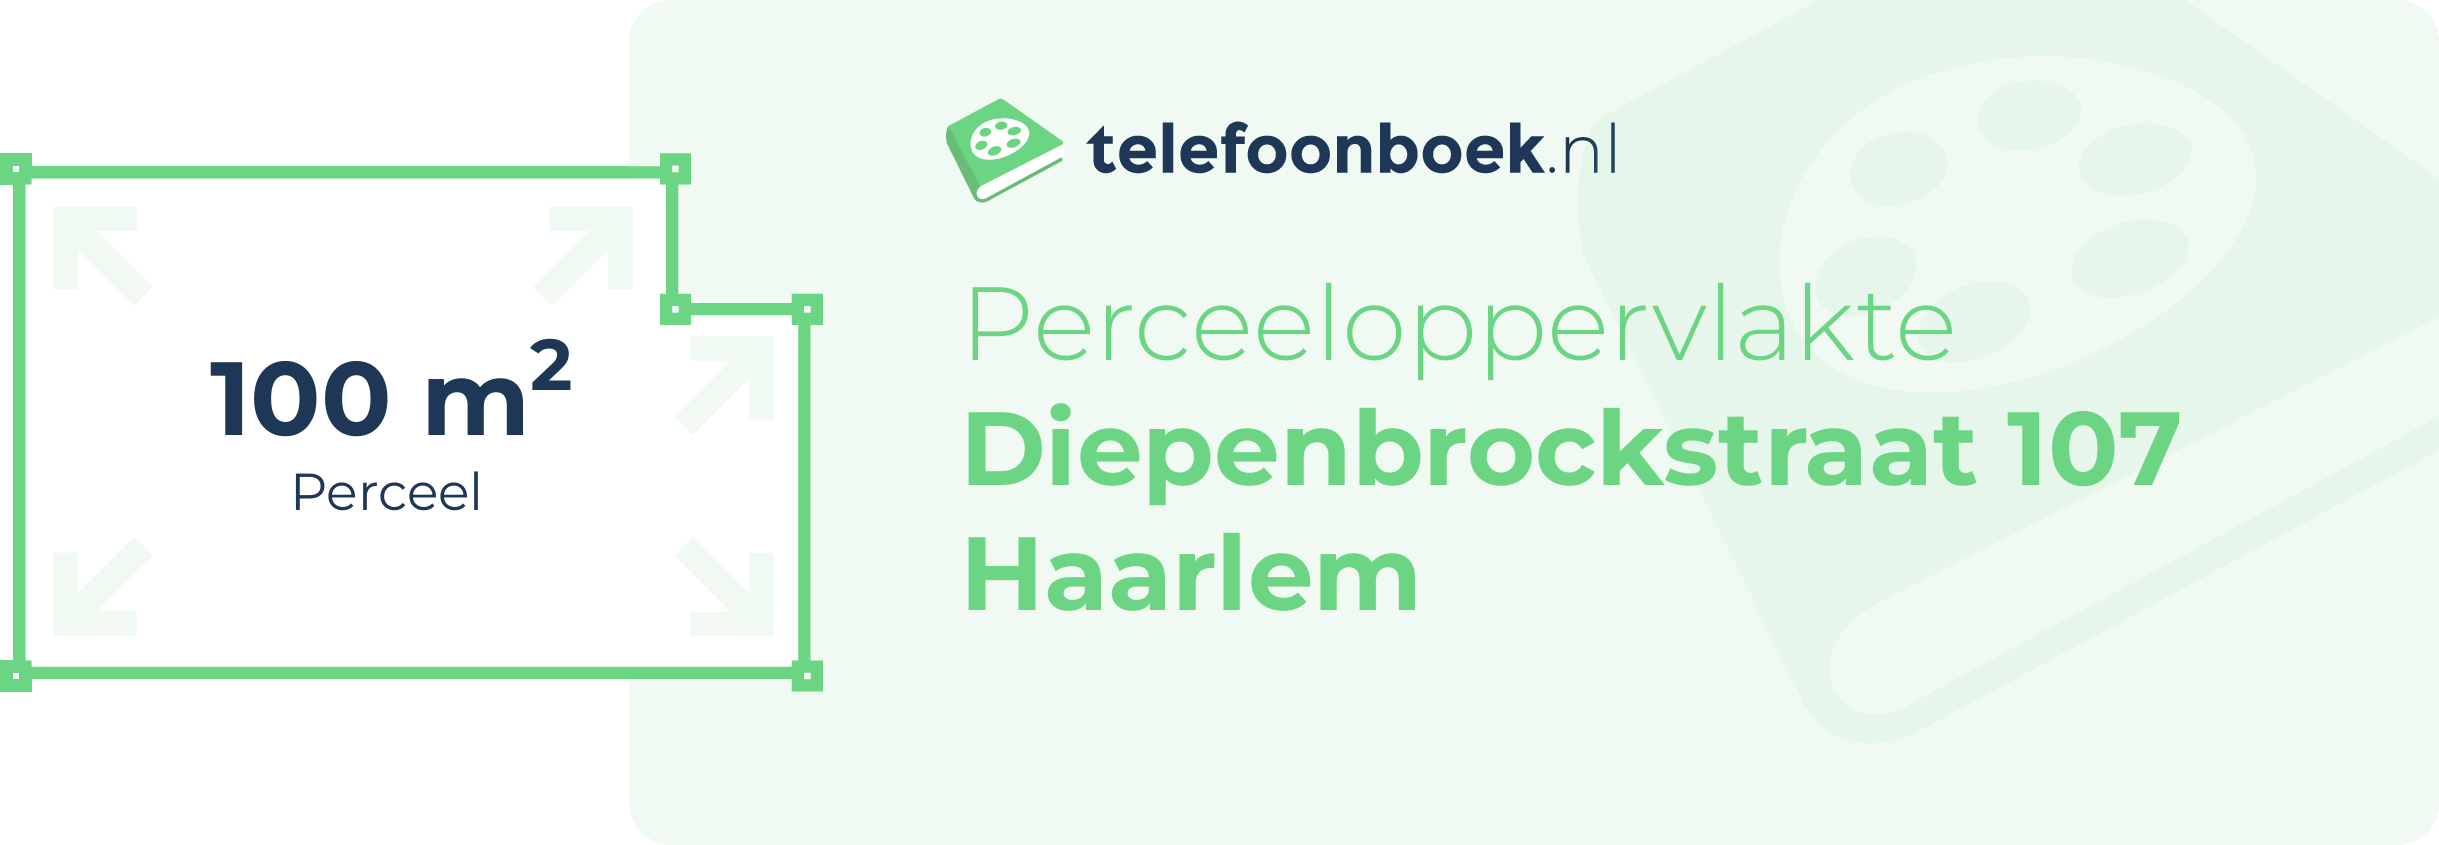 Perceeloppervlakte Diepenbrockstraat 107 Haarlem